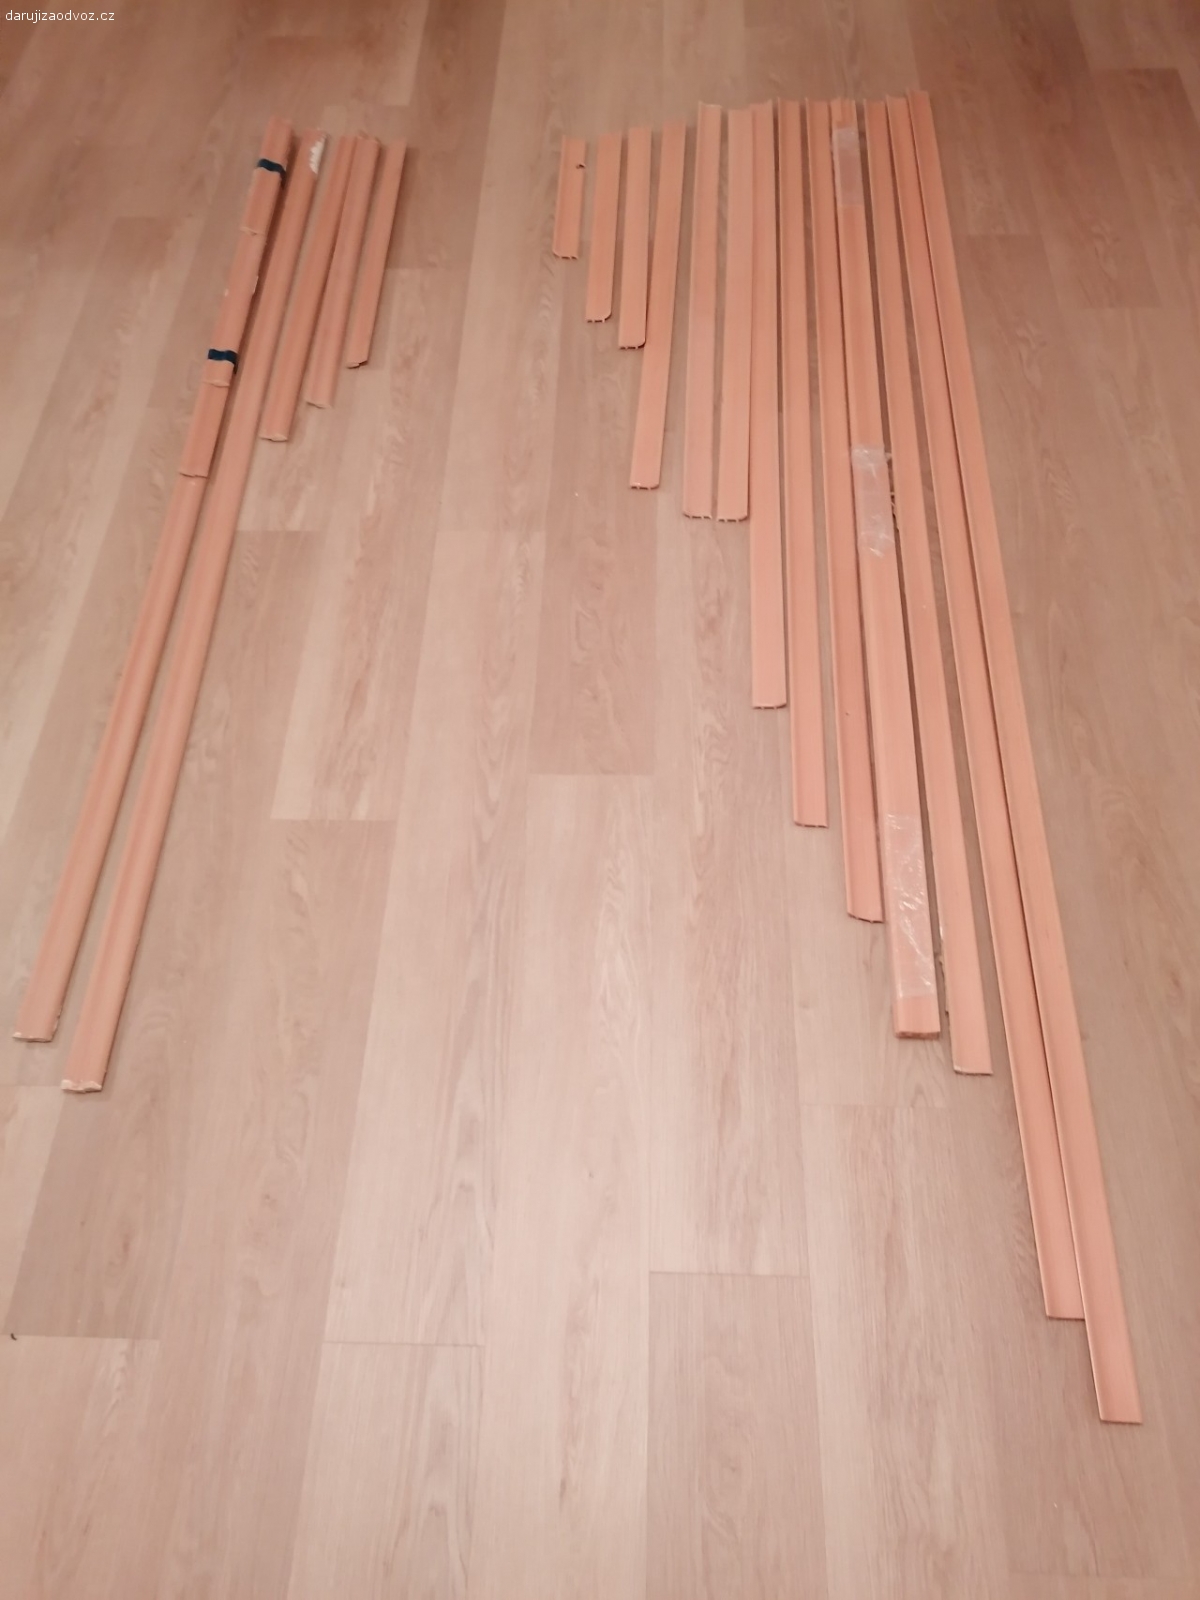 Lišty k podlahám. Použité lišty k podlahám buk. Plastové celková délka cca 22m a dřevěné celková délka cca 8,5m. Třeba se budou někomu hodit.